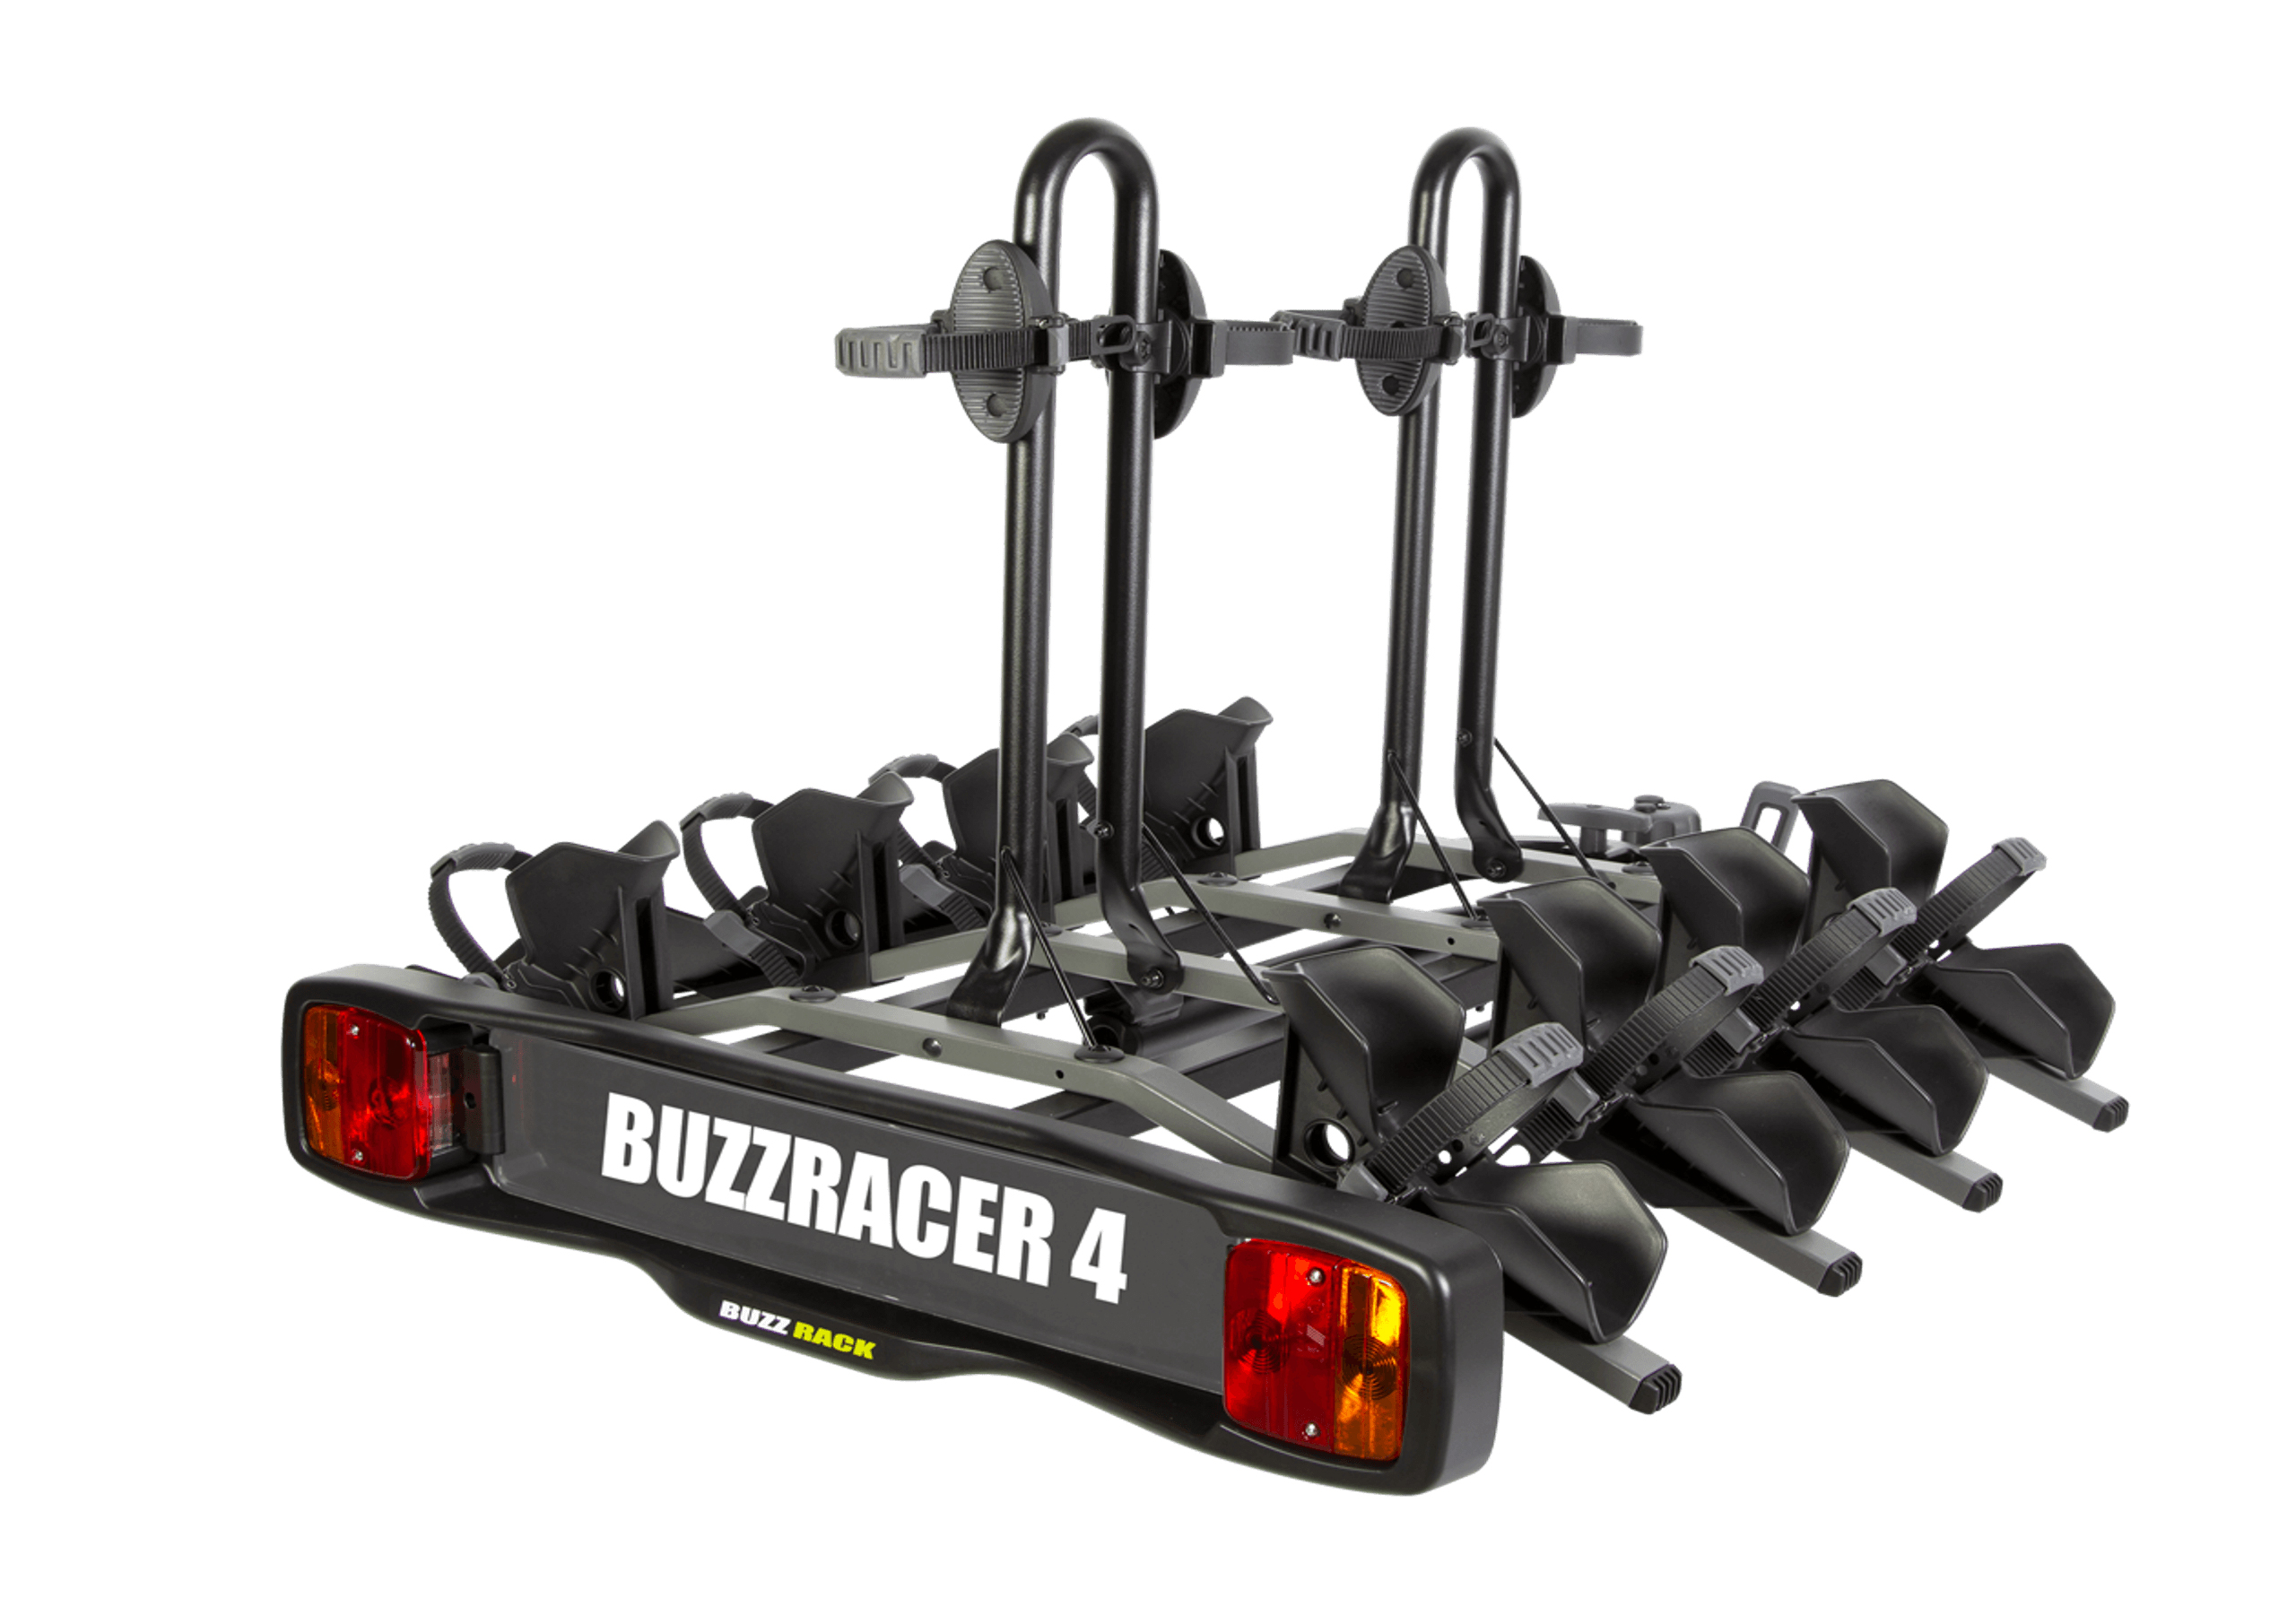 :BUZZ RACK BuzzRacer 4 bike wheel support rack no. BRP334